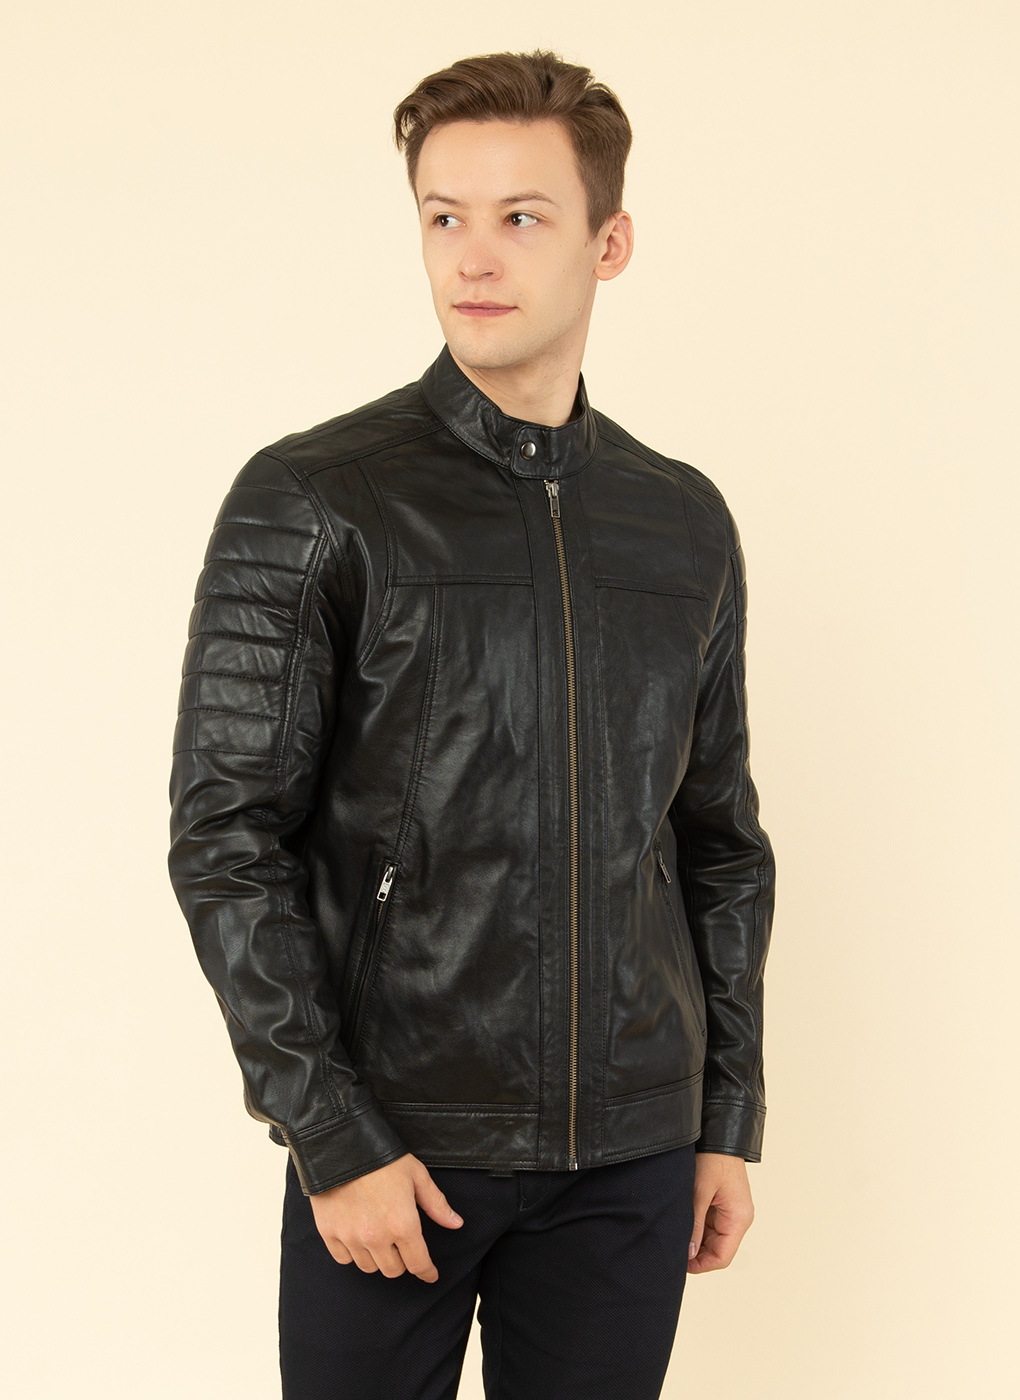 Кожаная куртка мужская Каляев 62677 черная 62 RU